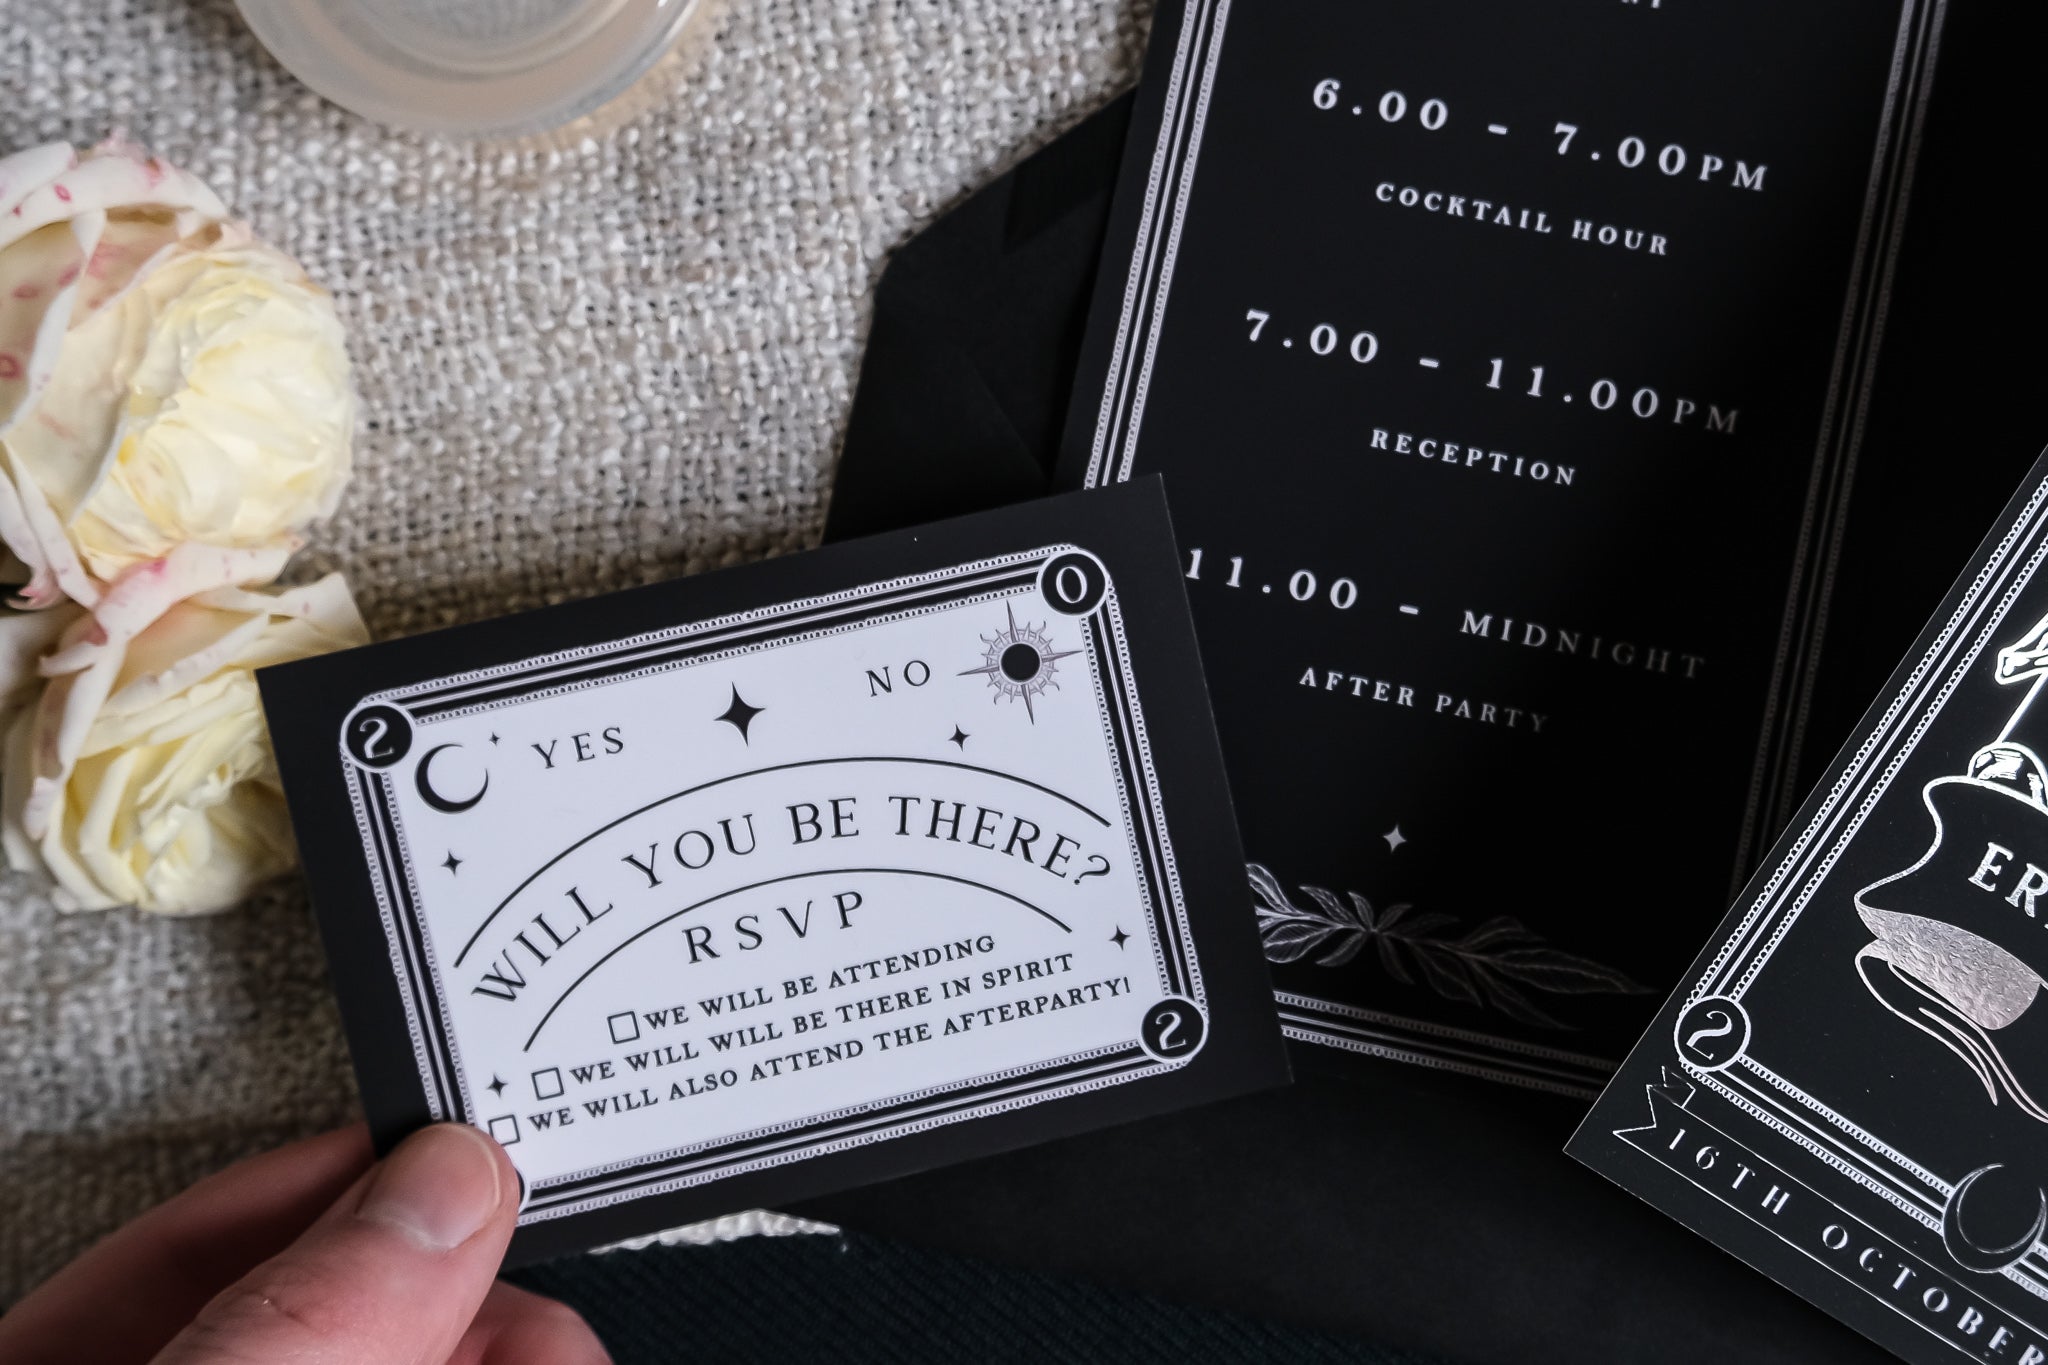 'Til Death Do Us Part' Foiled Tarot Card 3 Piece Invitation Suite